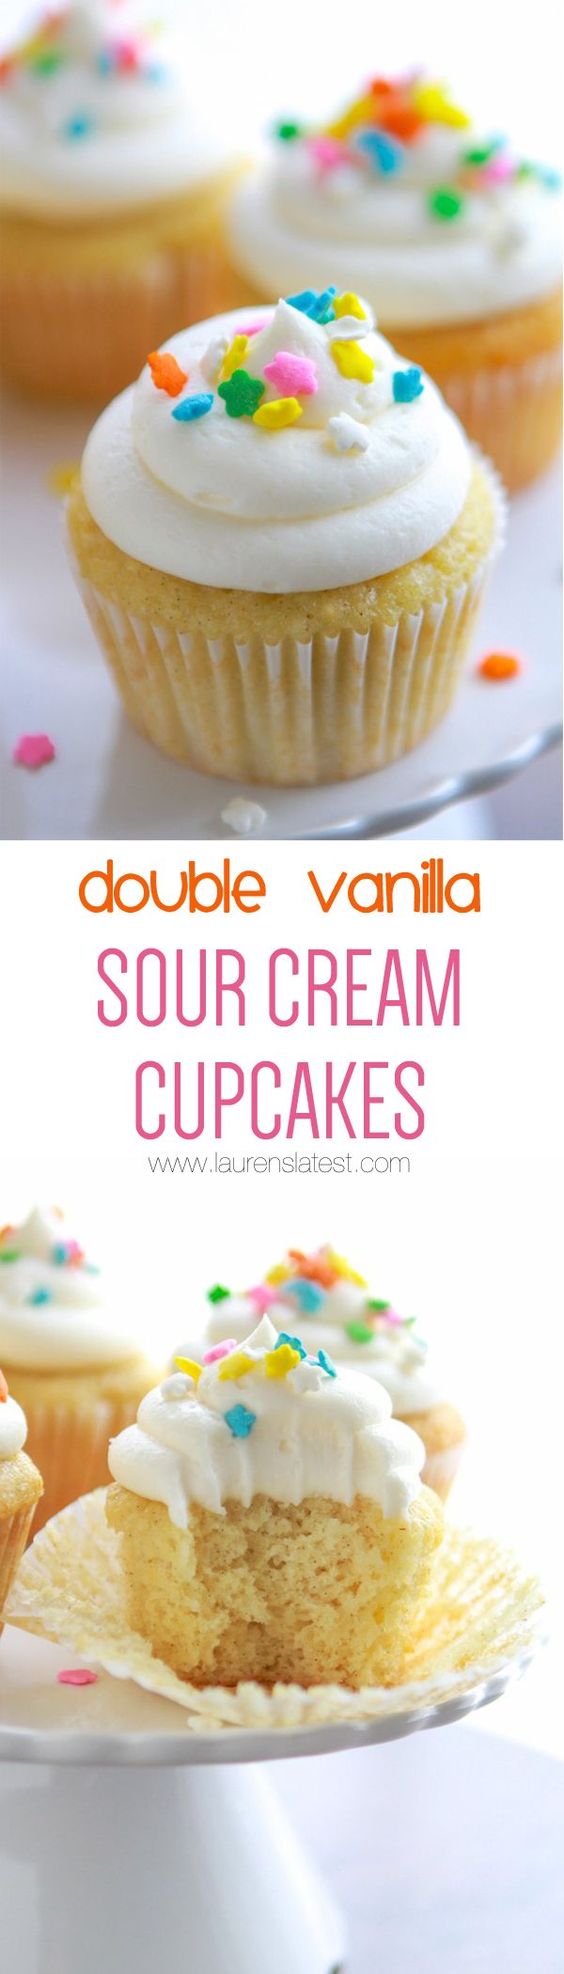 Vanilla Cupcakes Sour Cream